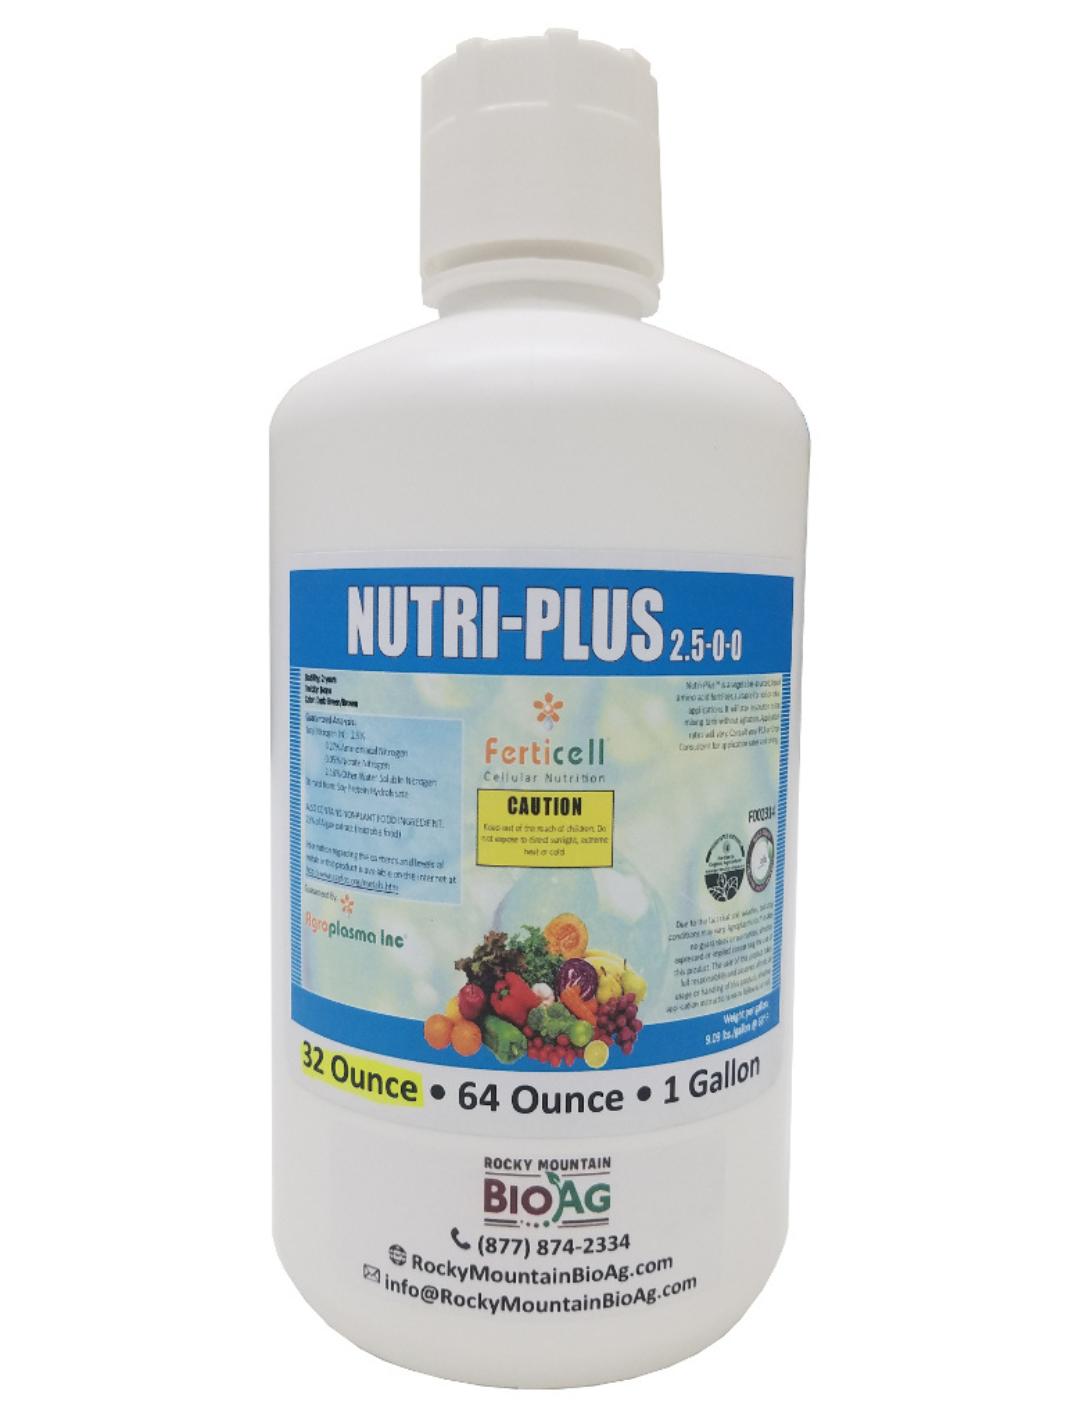 Ferticell Nutriplus 2.5-0-0 Organic Fertilizer in 32oz Bottle